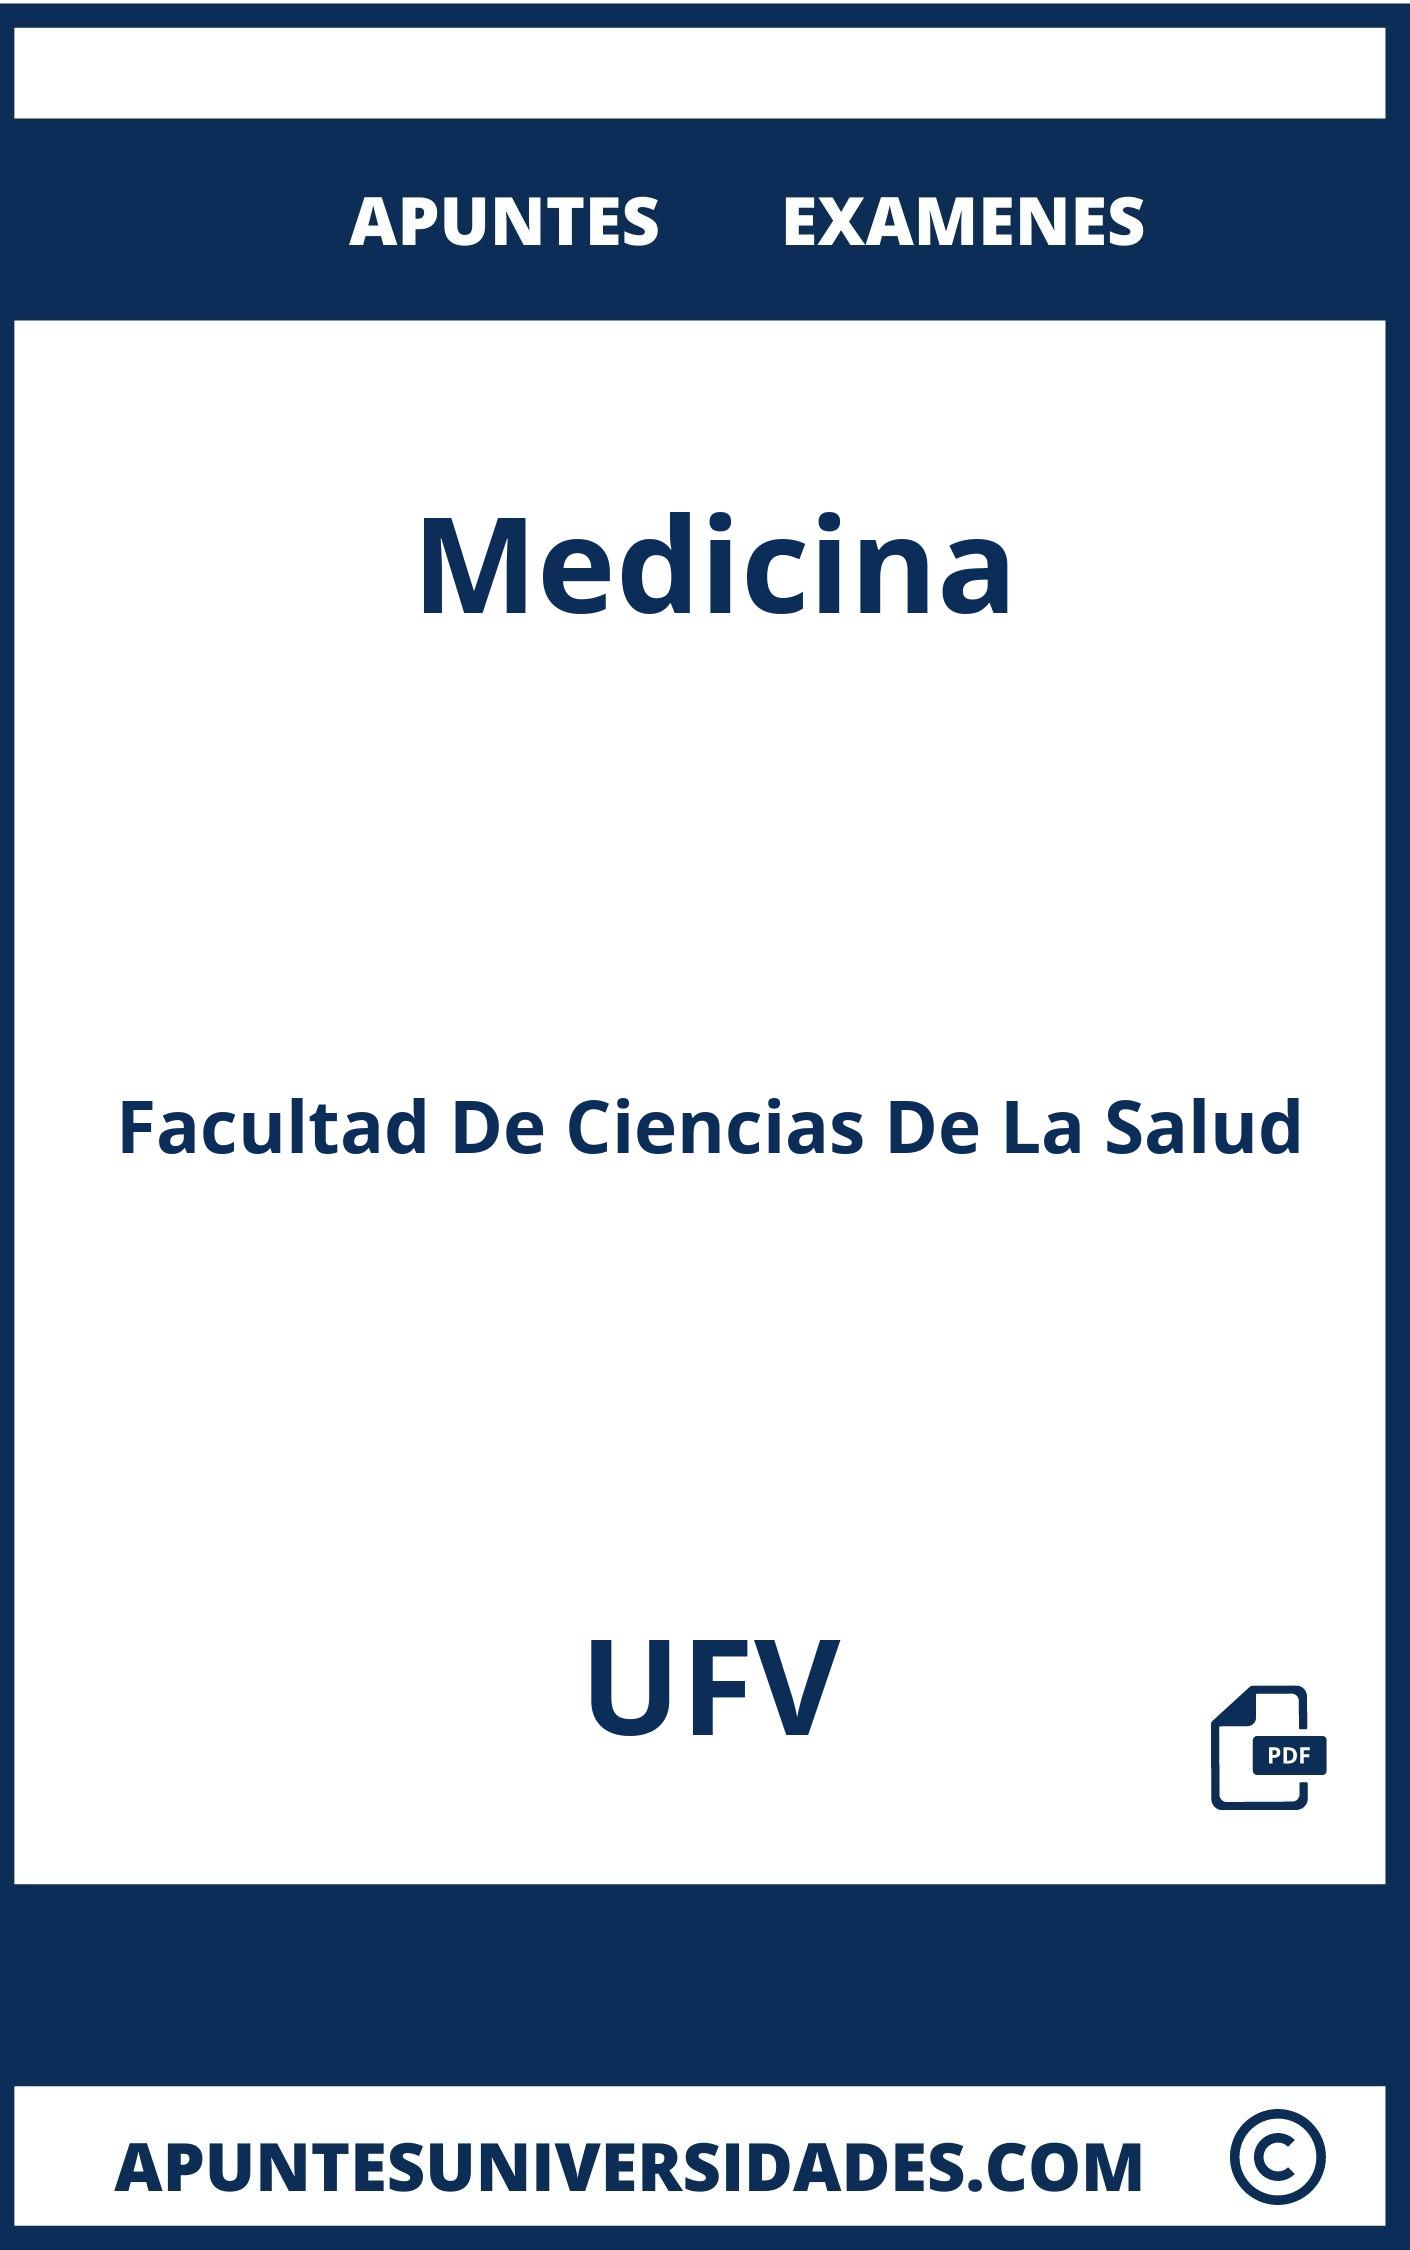 Medicina UFV Apuntes Examenes